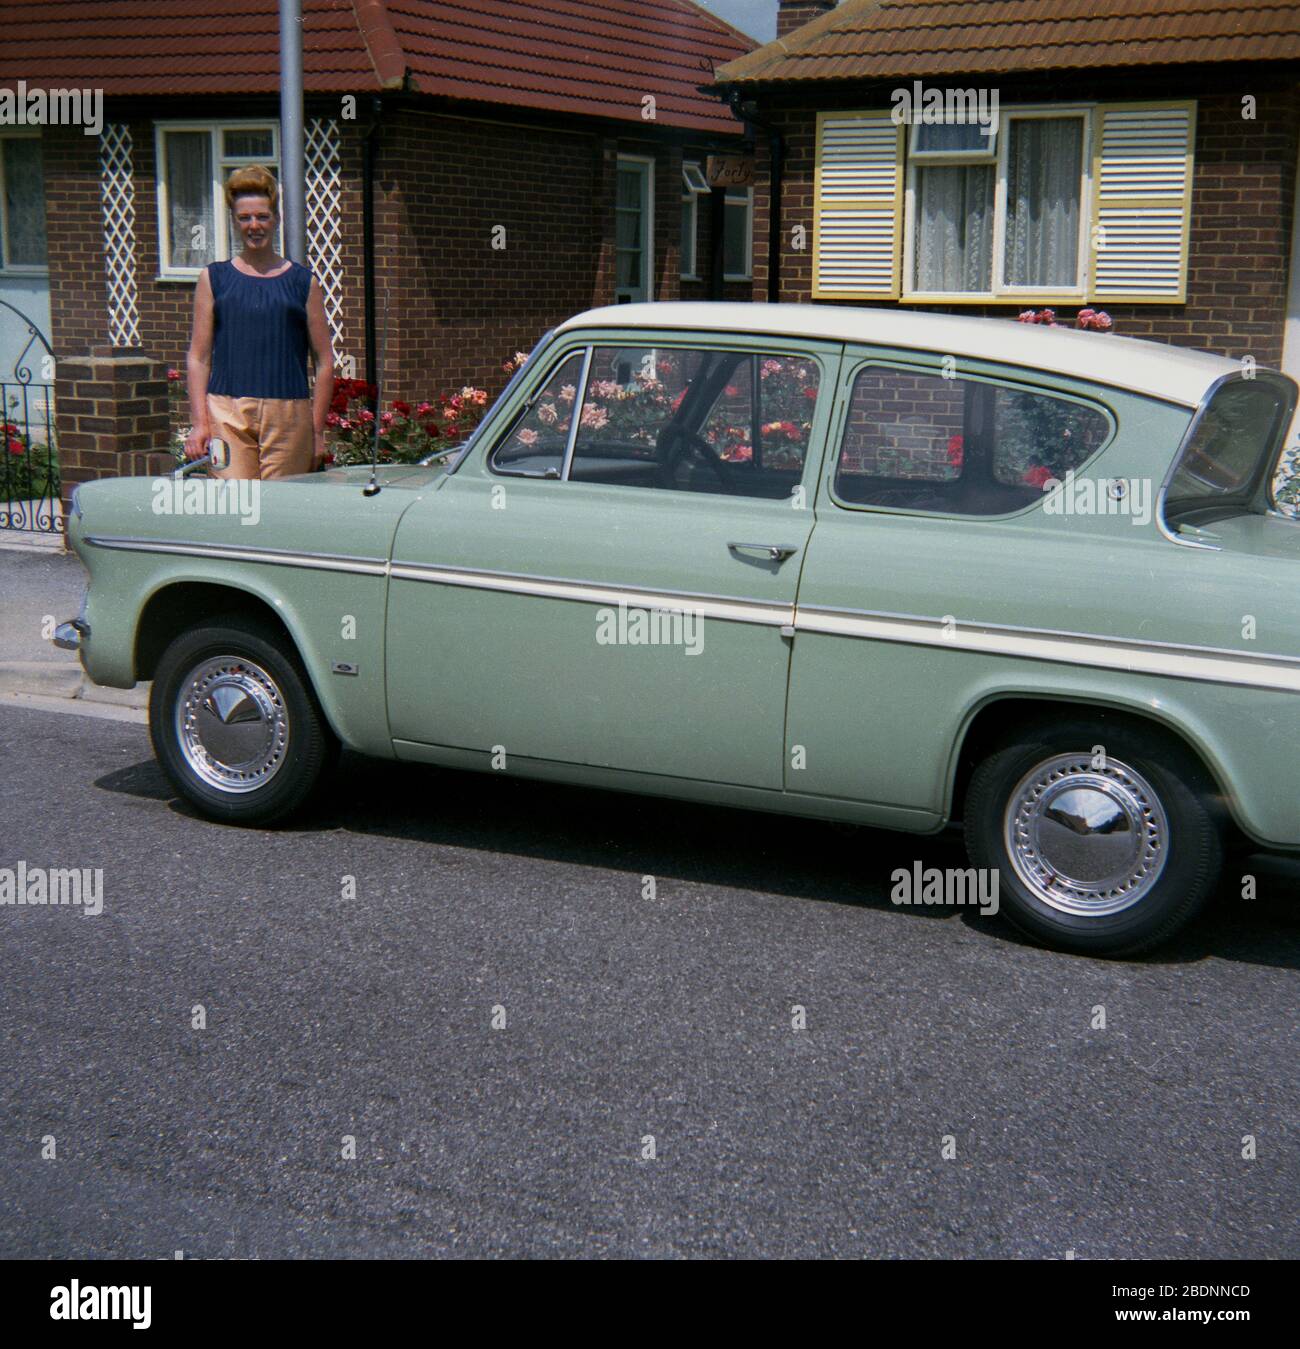 1970, historisch, außerhalb eines Bungalows in einer Vorstadtstraße, eine Besitzerin steht stolz neben ihrem zweitürigen Ford Anglia 105E-Wagen, einem beliebten Kleinfamilienauto, das zwischen 1959 und 1967 hergestellt wurde. Der 105E war das vierte Anglia-Modell und mit seinem neuen "amerikanisierten" Modell Unterschied sich von früheren Fahrzeugen mit abgerundeten Aufbauten und war ein großer Erfolg in Großbritannien mit Rekordverkäufen. Stockfoto